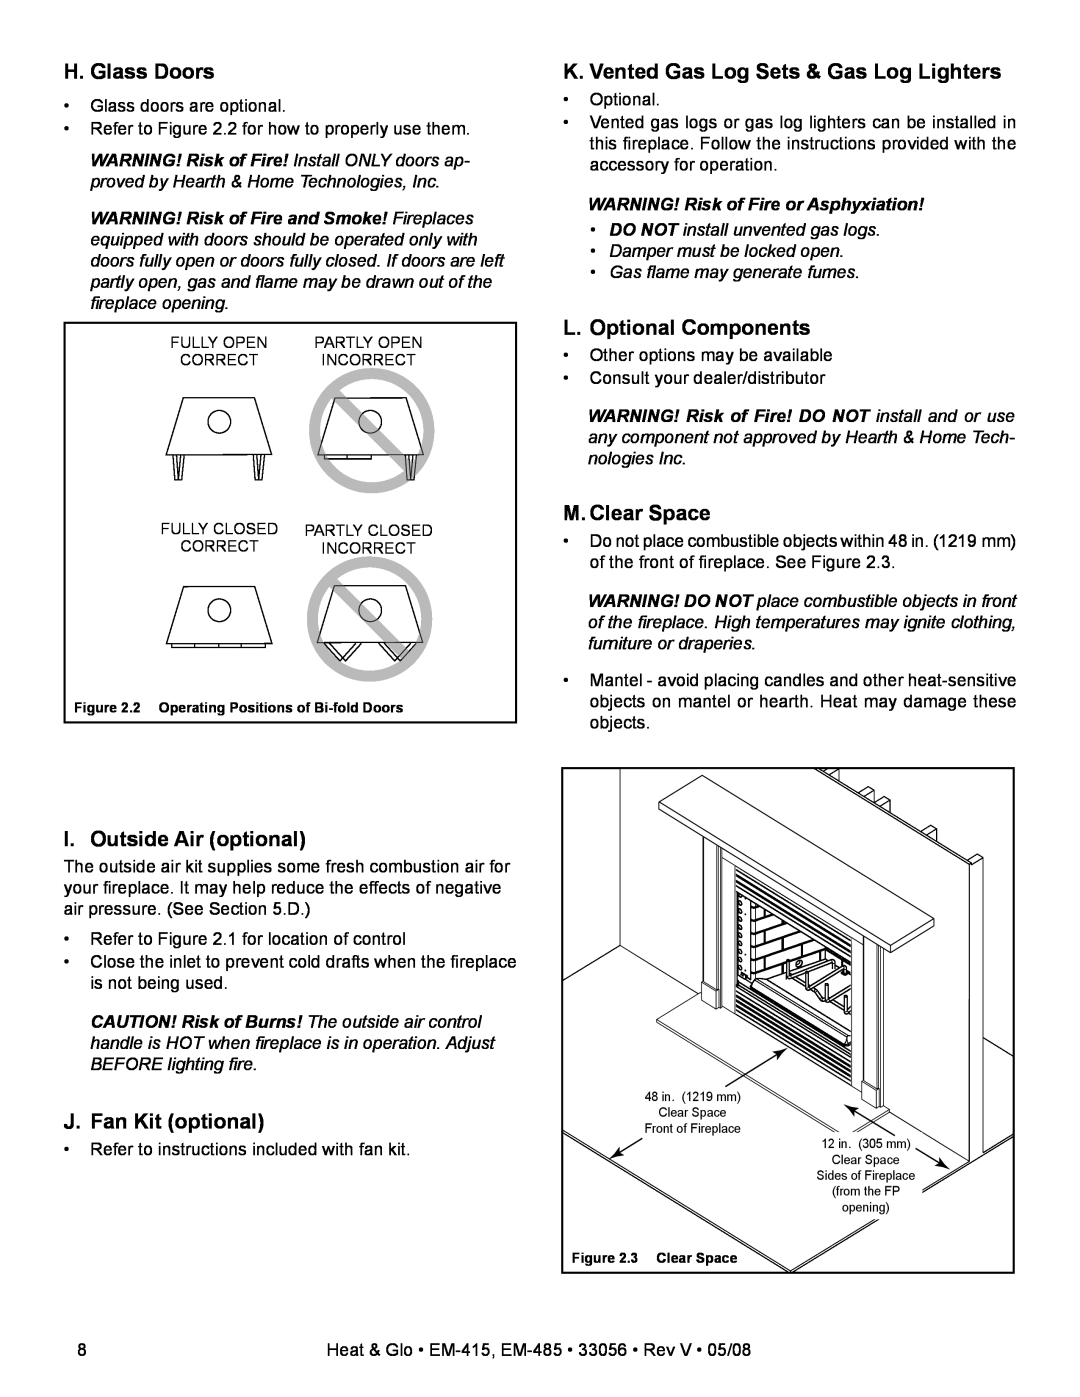 Heat & Glo LifeStyle EM-485TH, EM-415 H. Glass Doors, K. Vented Gas Log Sets & Gas Log Lighters, L. Optional Components 